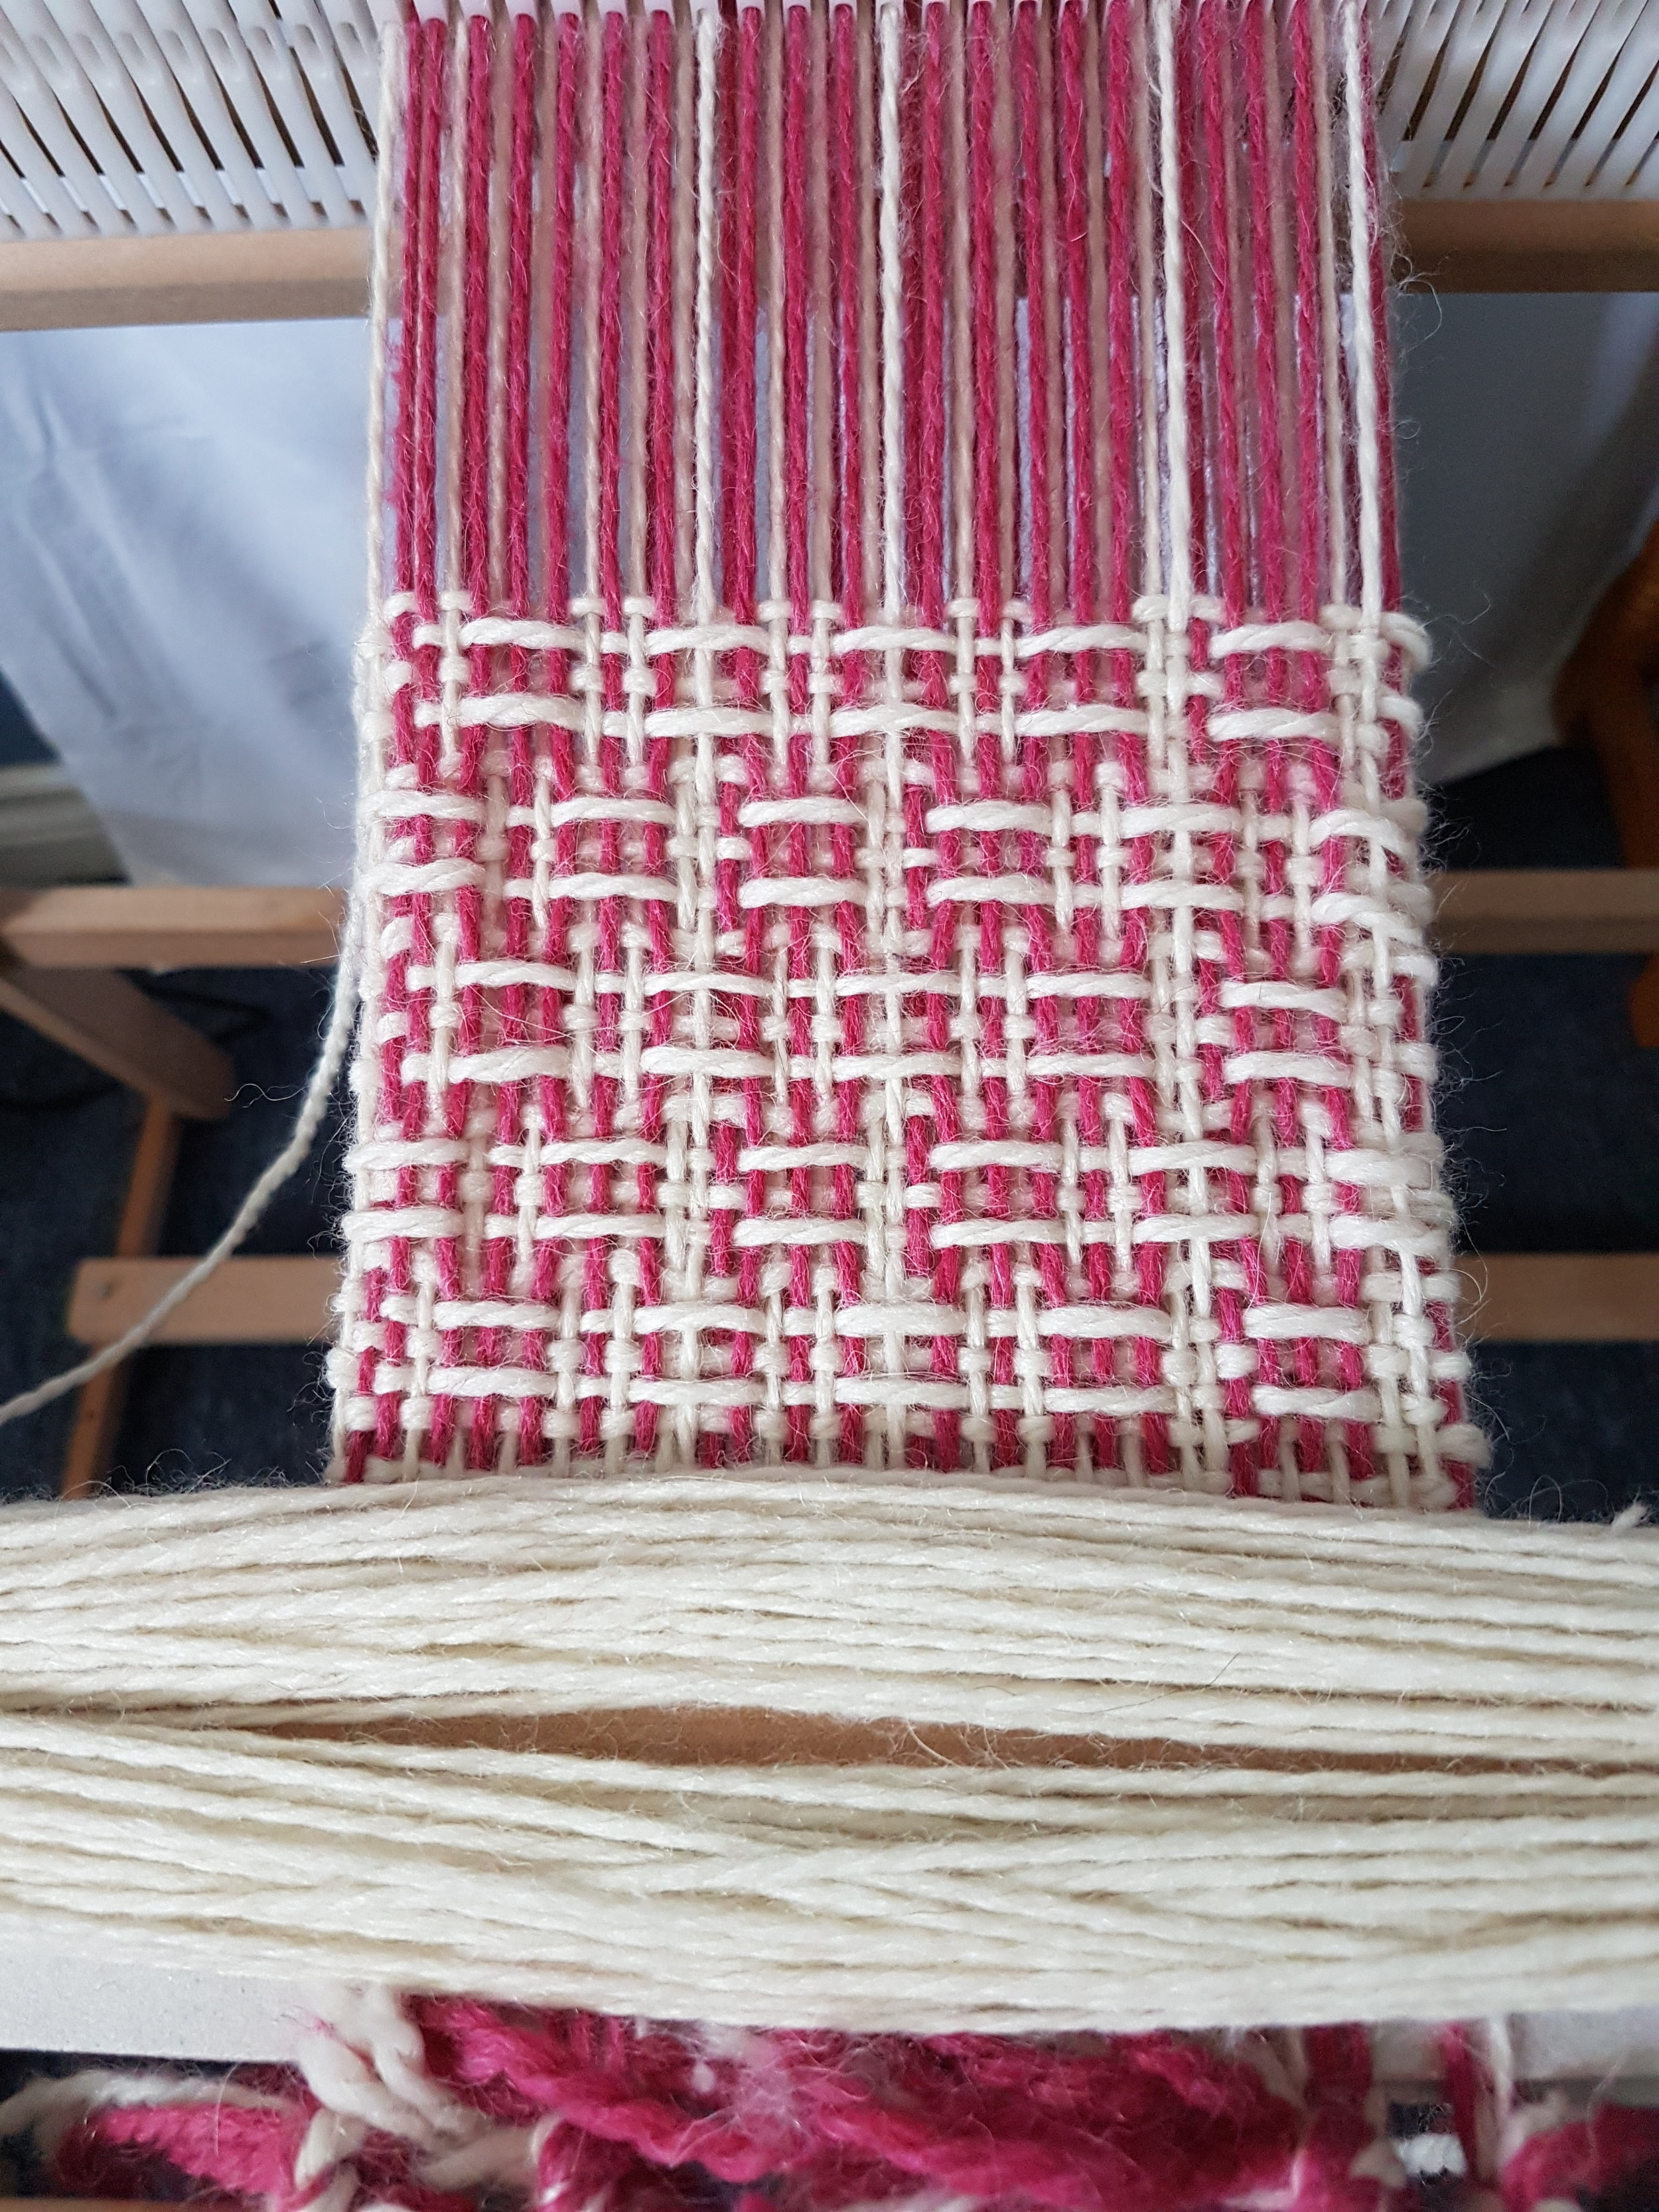 Weaving Techniques, Woven Patch